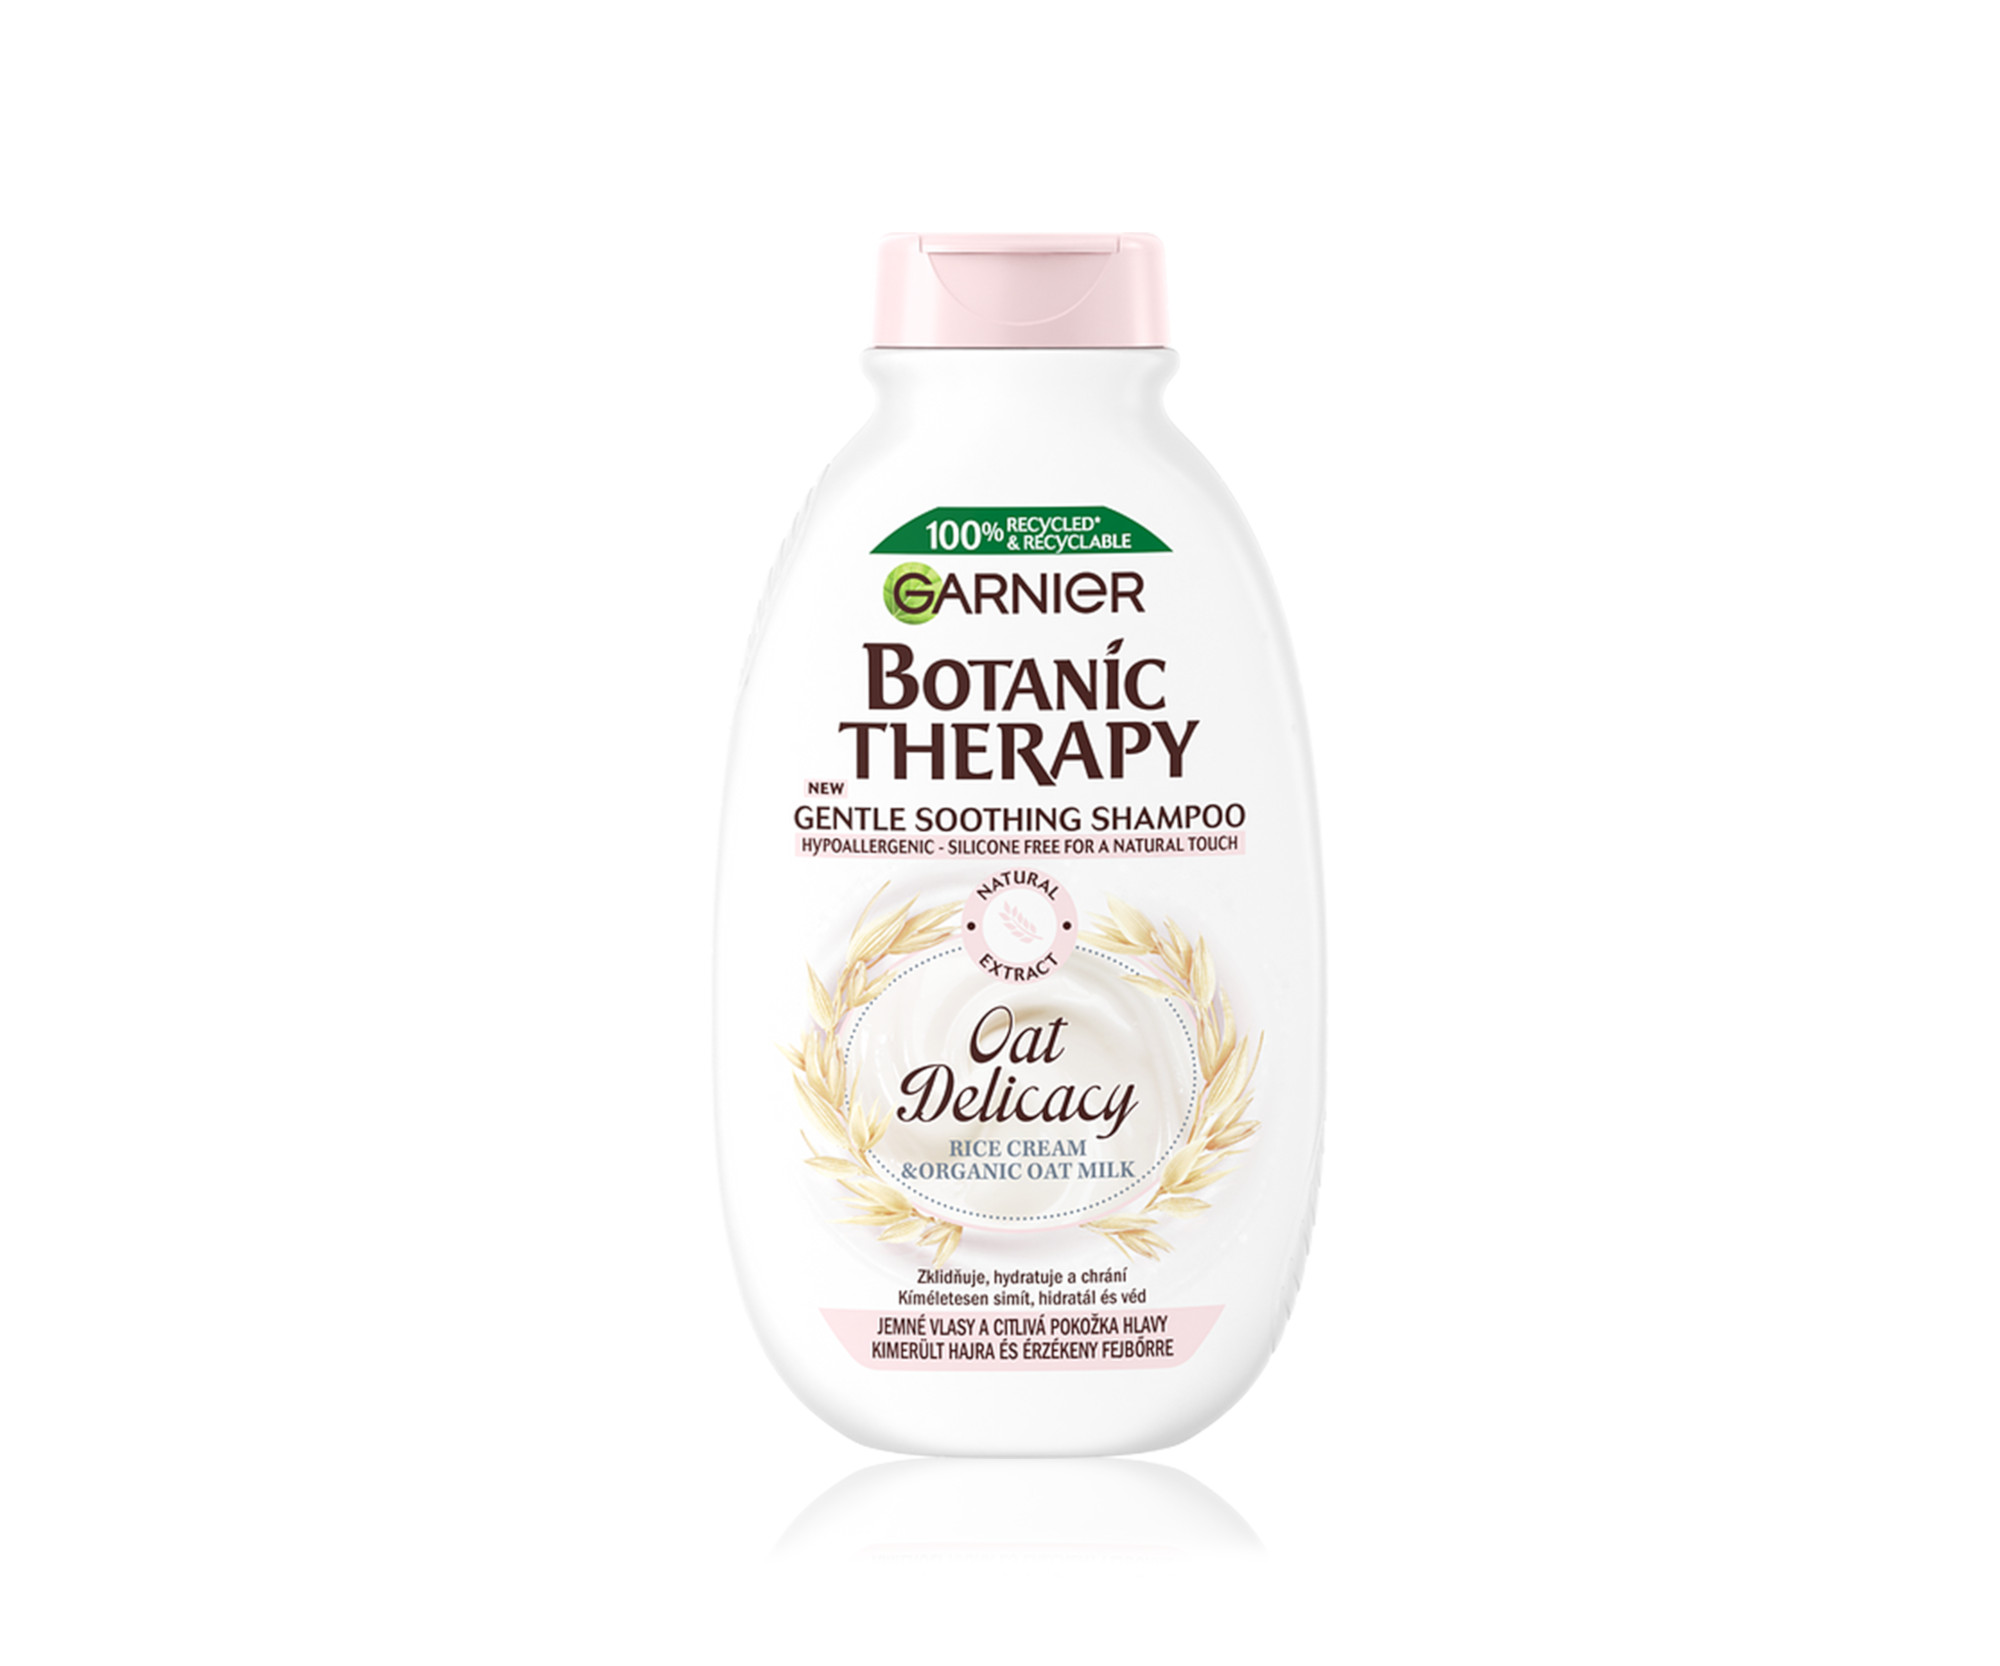 Jemný zklidňující šampon Garnier Botanic Therapy Oat Delicacy Gentle Soothing Shampoo - 250 ml (6778600)